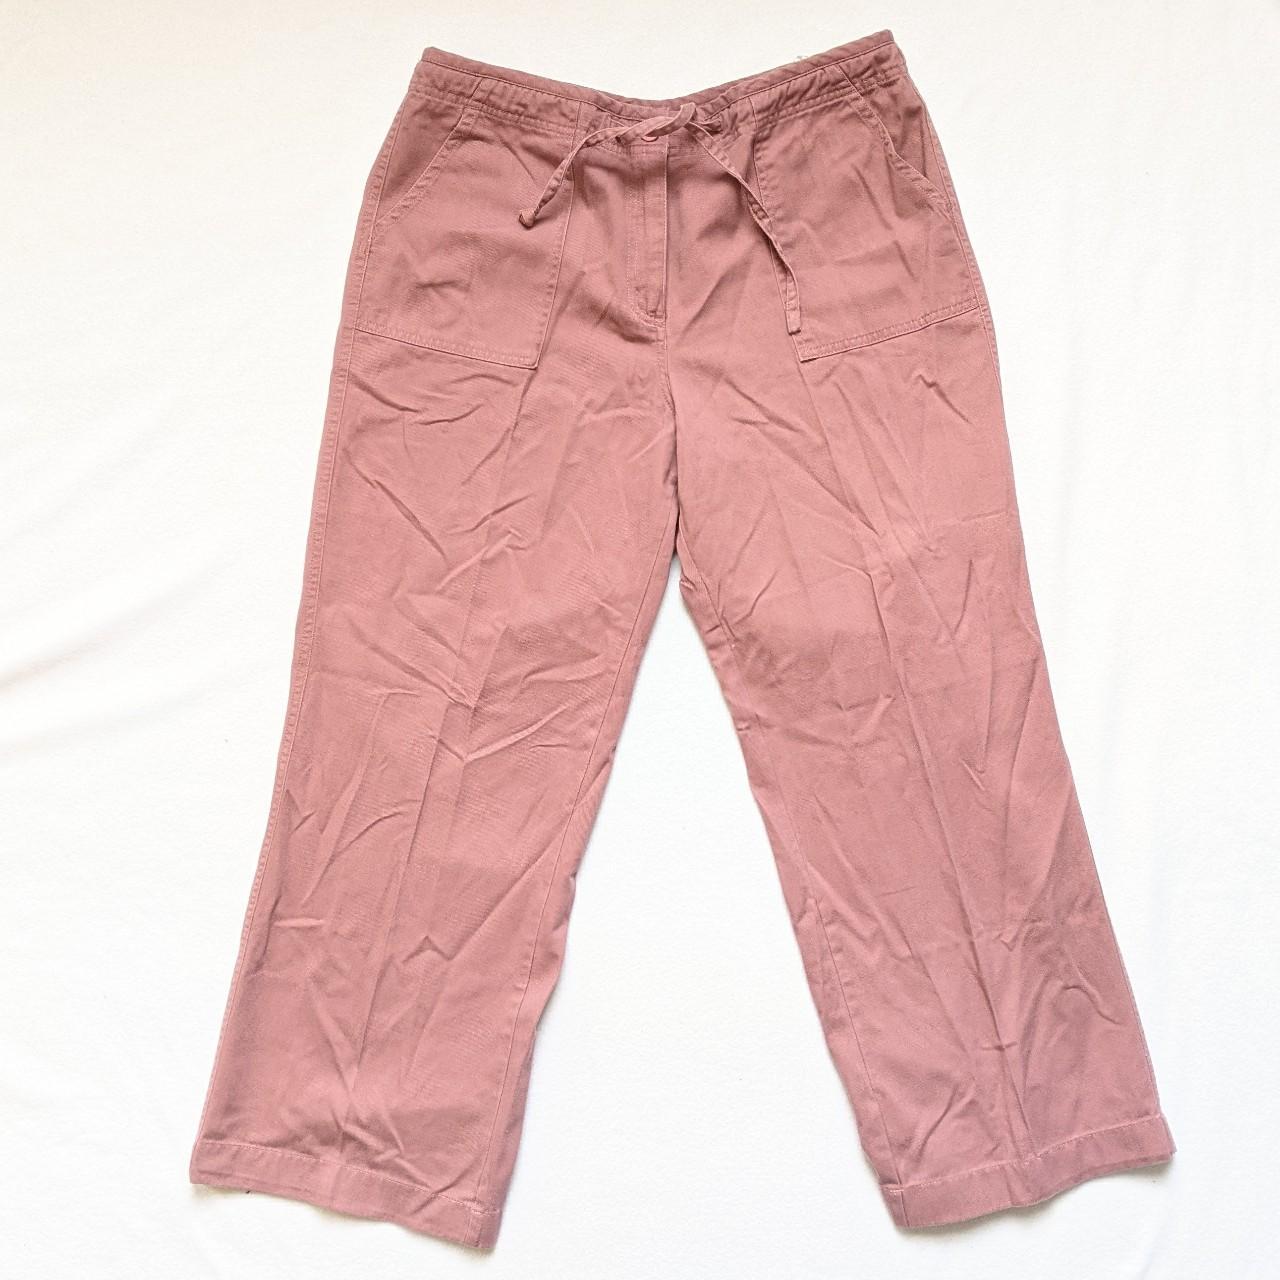 ☑️ Vintage EWM Clothing Cargo Style Trousers in Dusty... - Depop